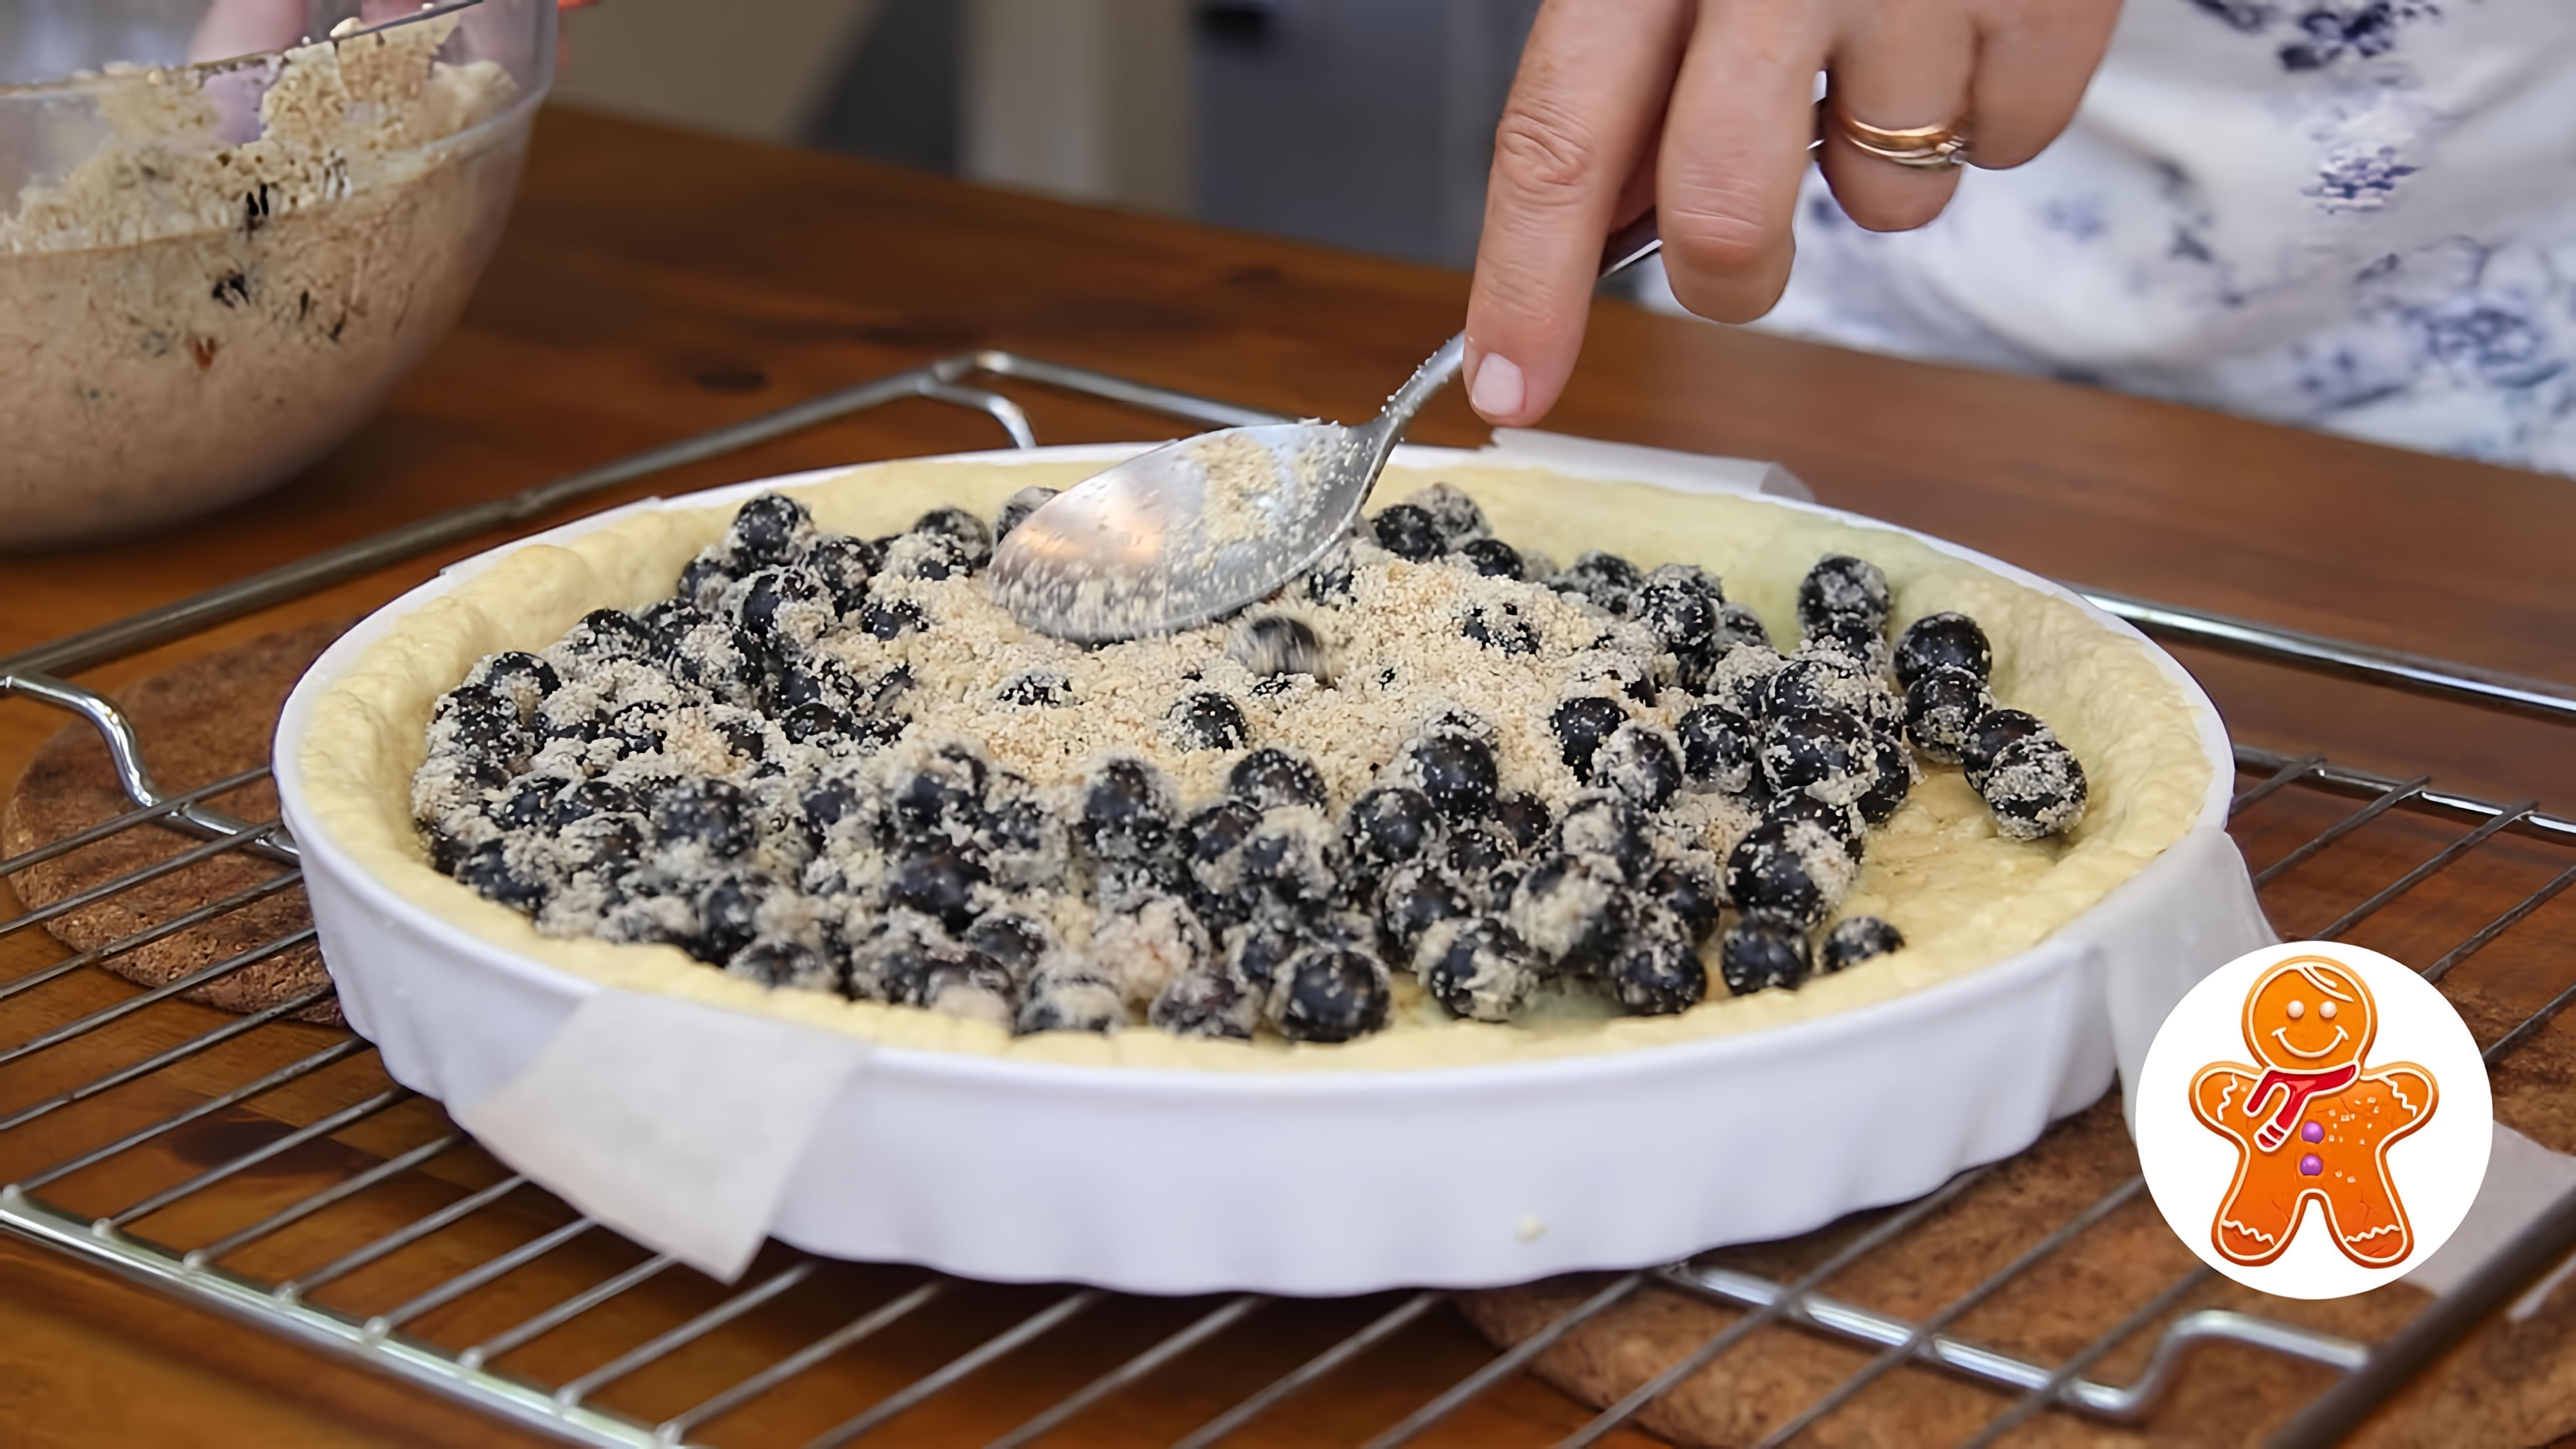 В этом видео демонстрируется процесс приготовления необычного пирога с черной смородиной